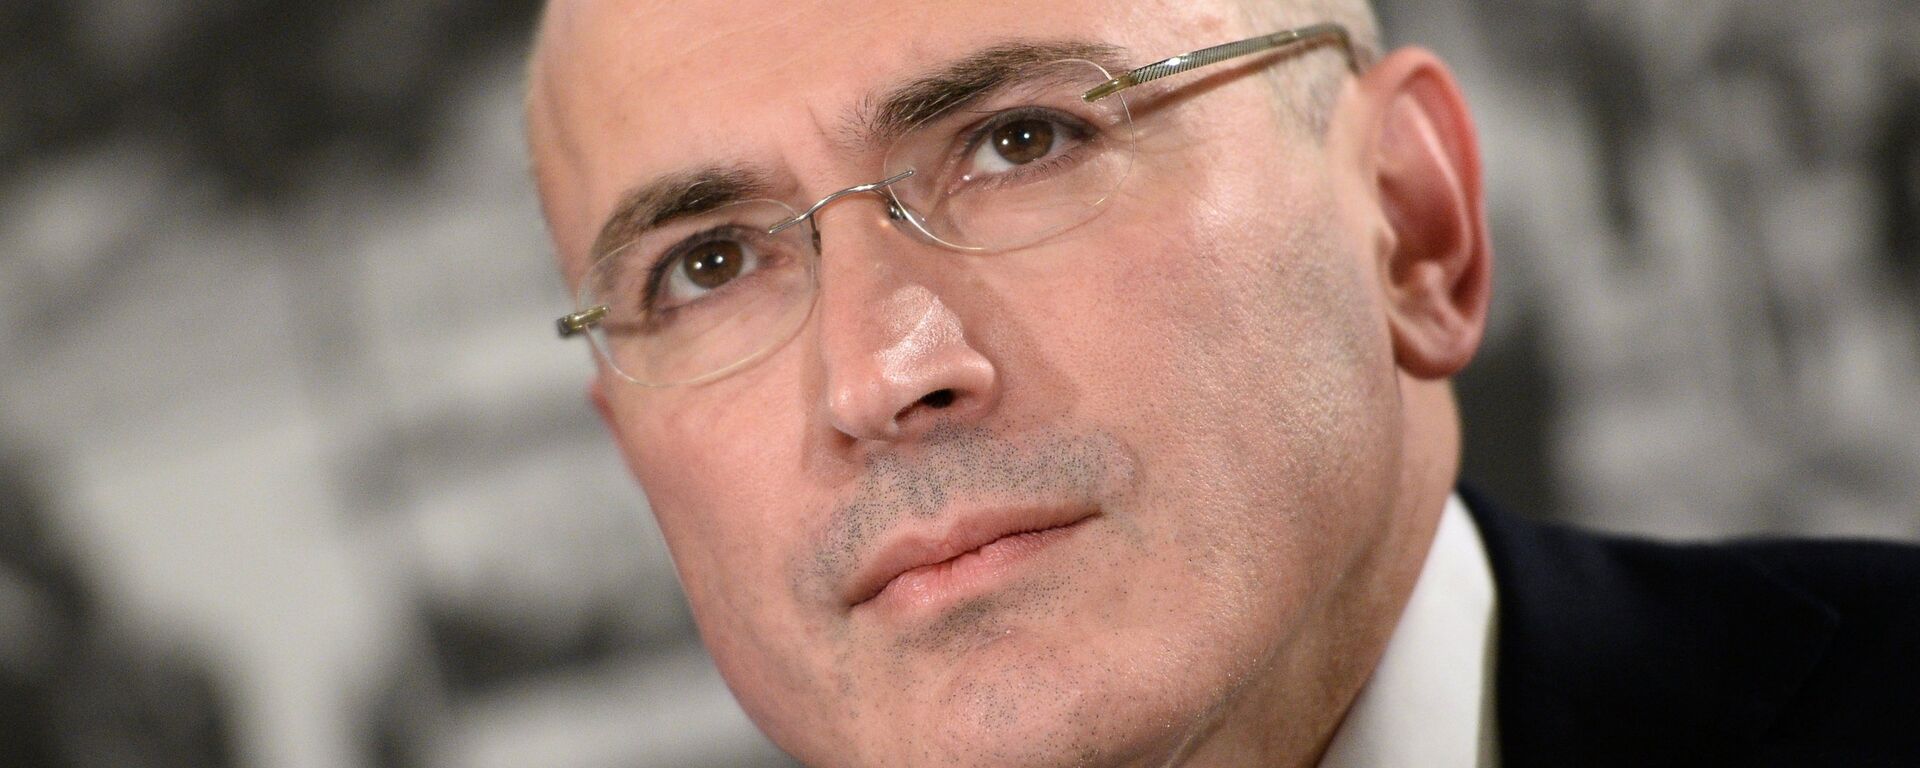 Mikhail Khodorkovsky - Sputnik International, 1920, 10.01.2014